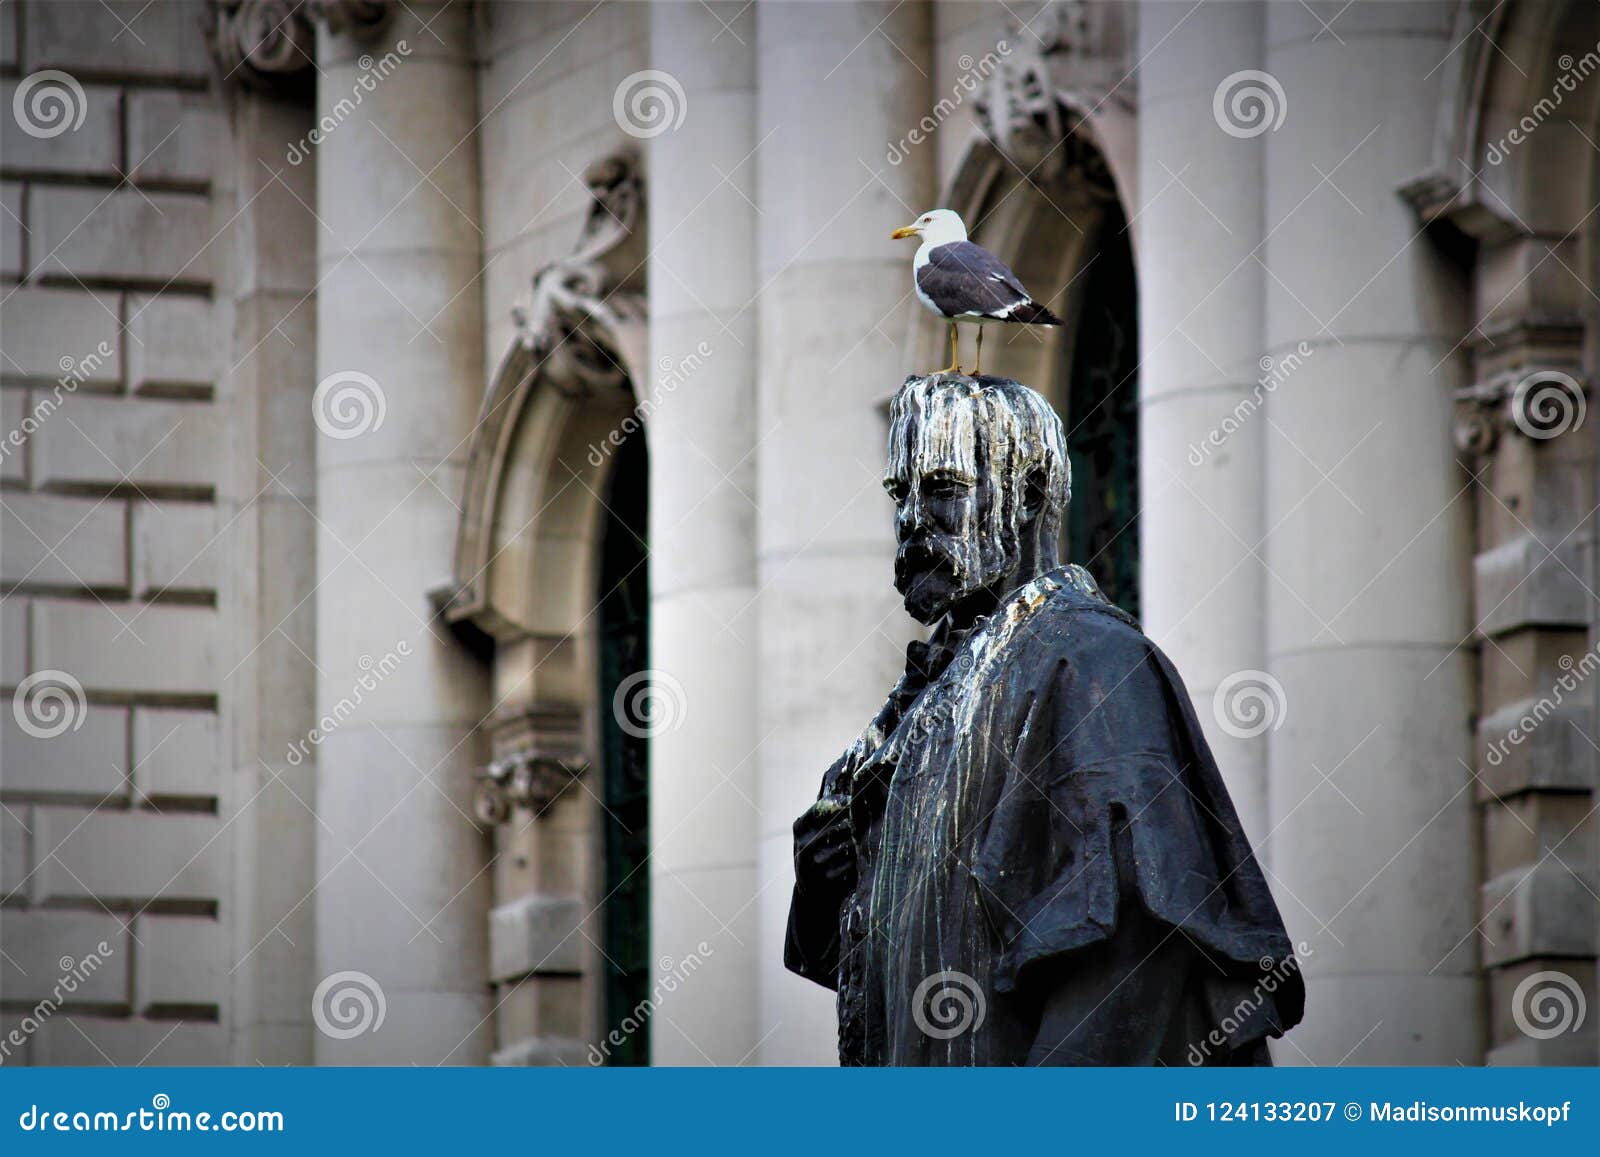 bird-poop-statue-belfast-city-hall-belfast-northern-ireland-124133207.jpg